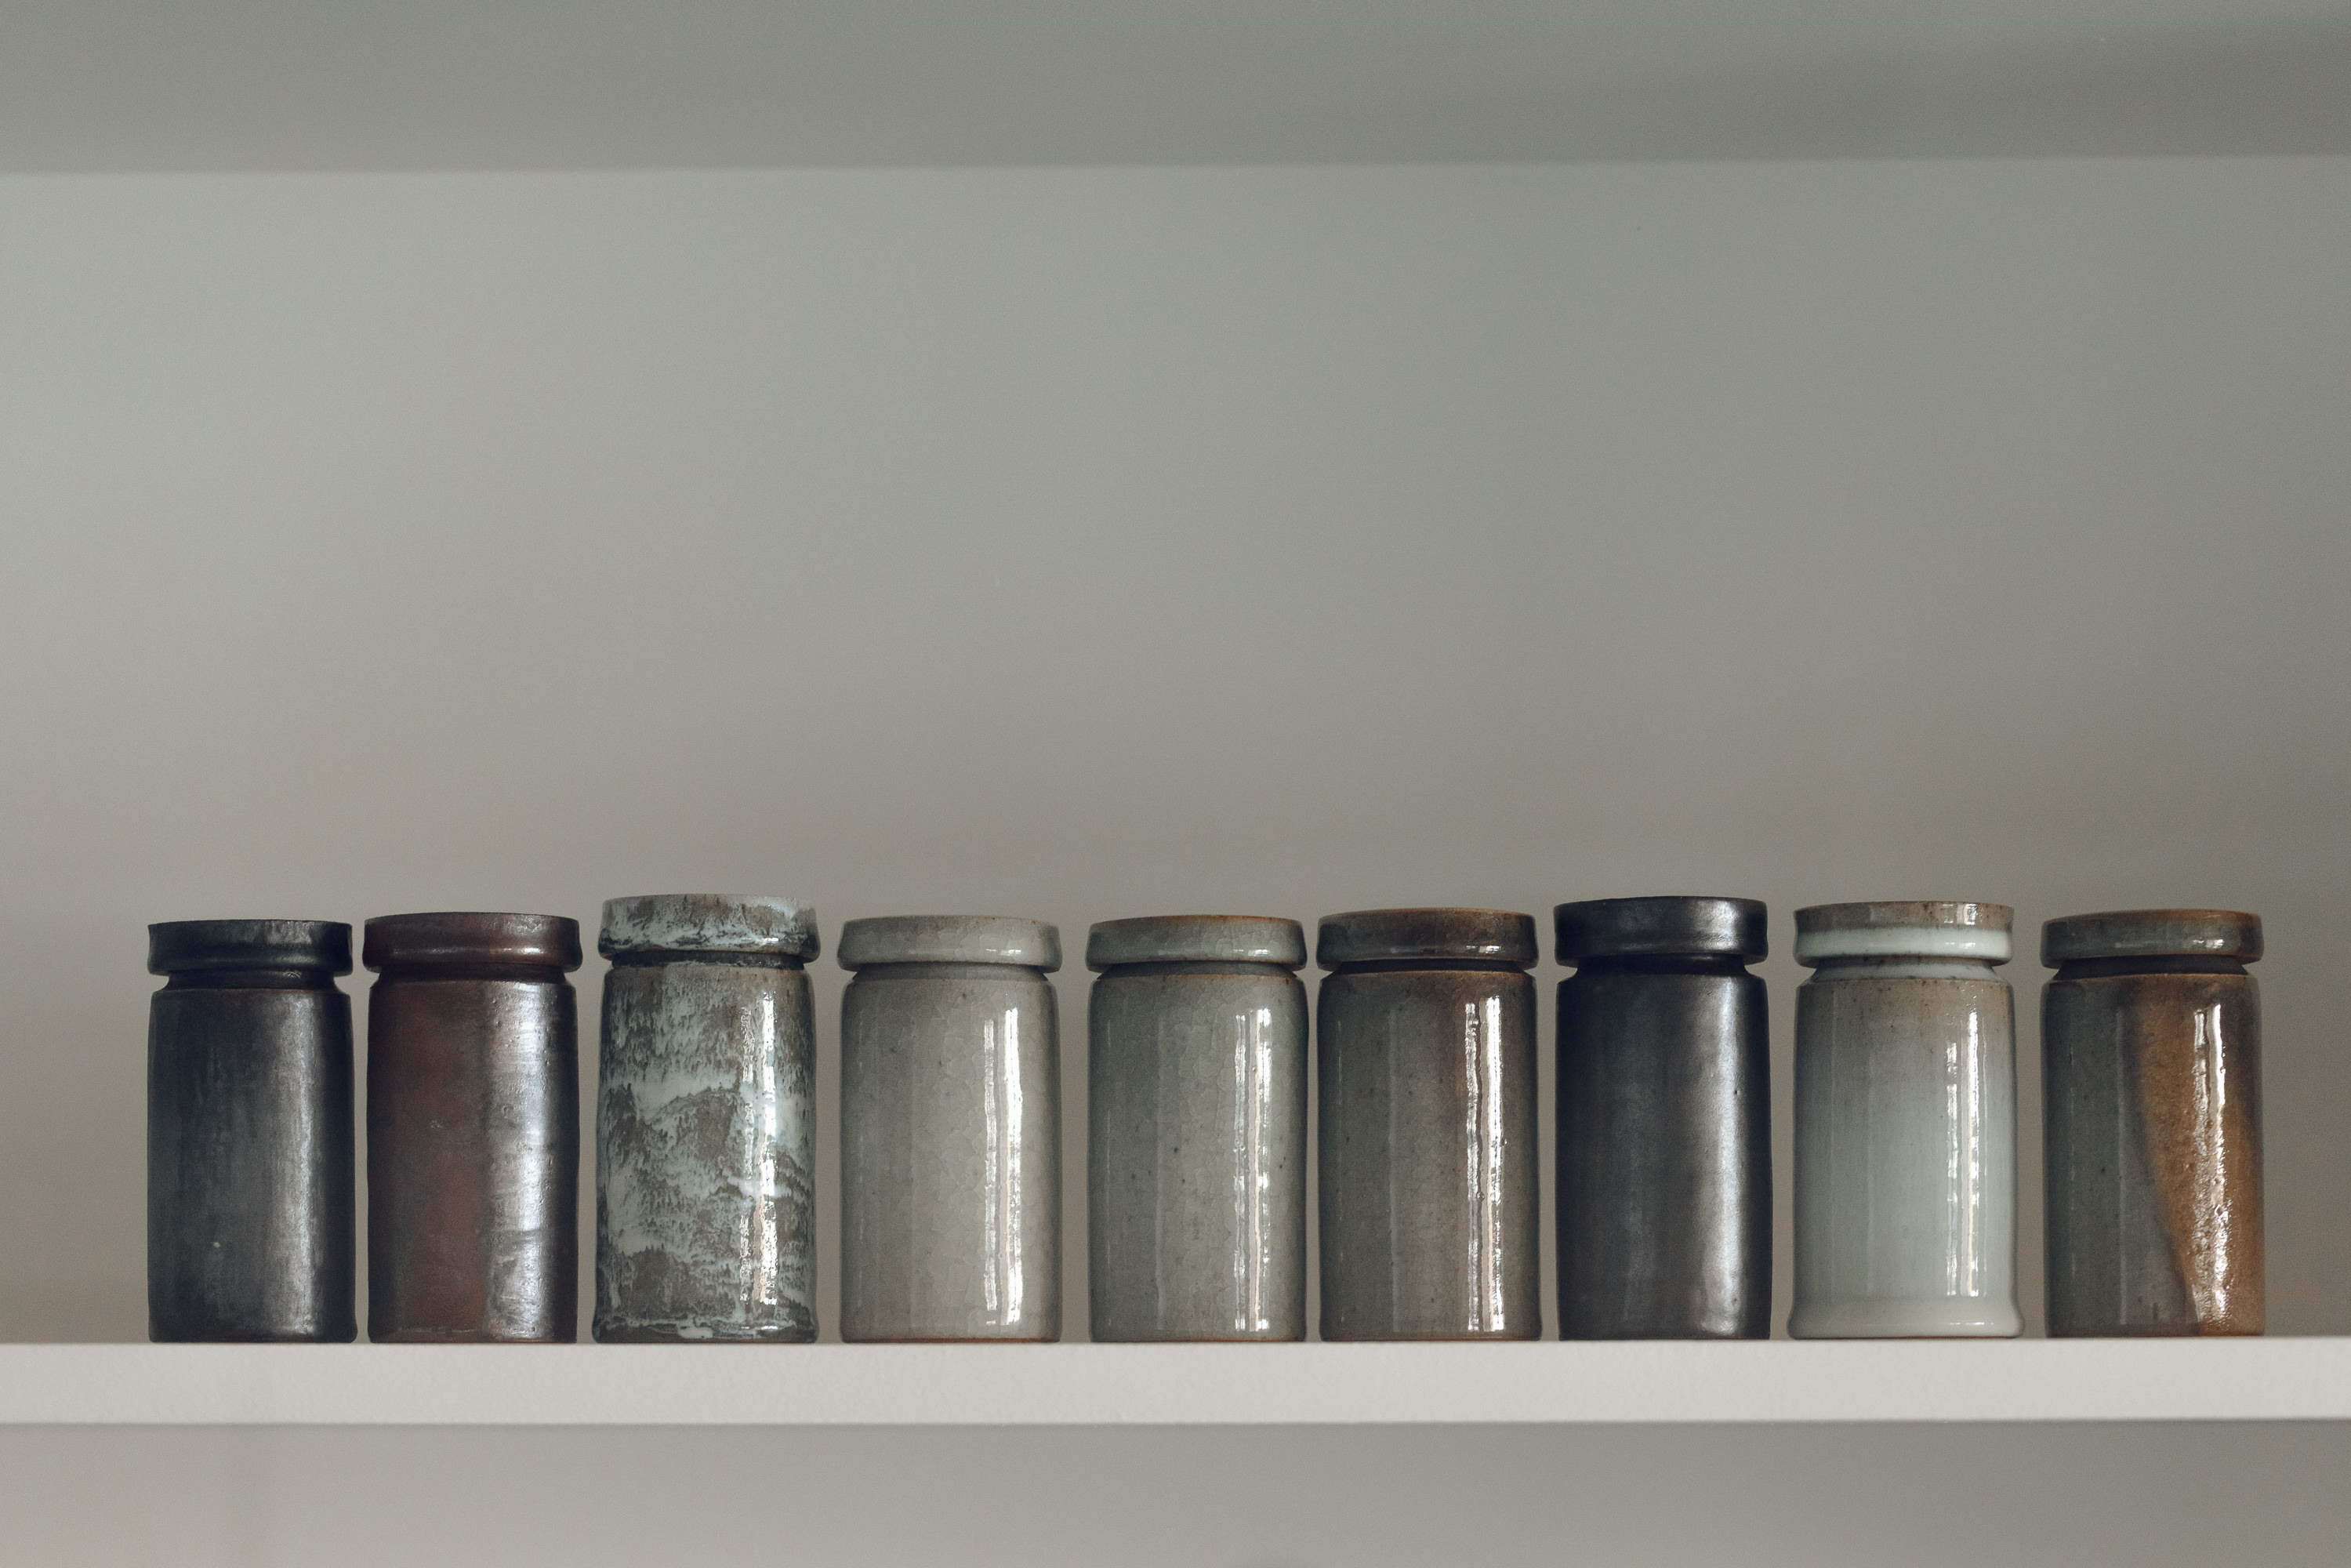 Nine lidded ceramic pots on a shelf